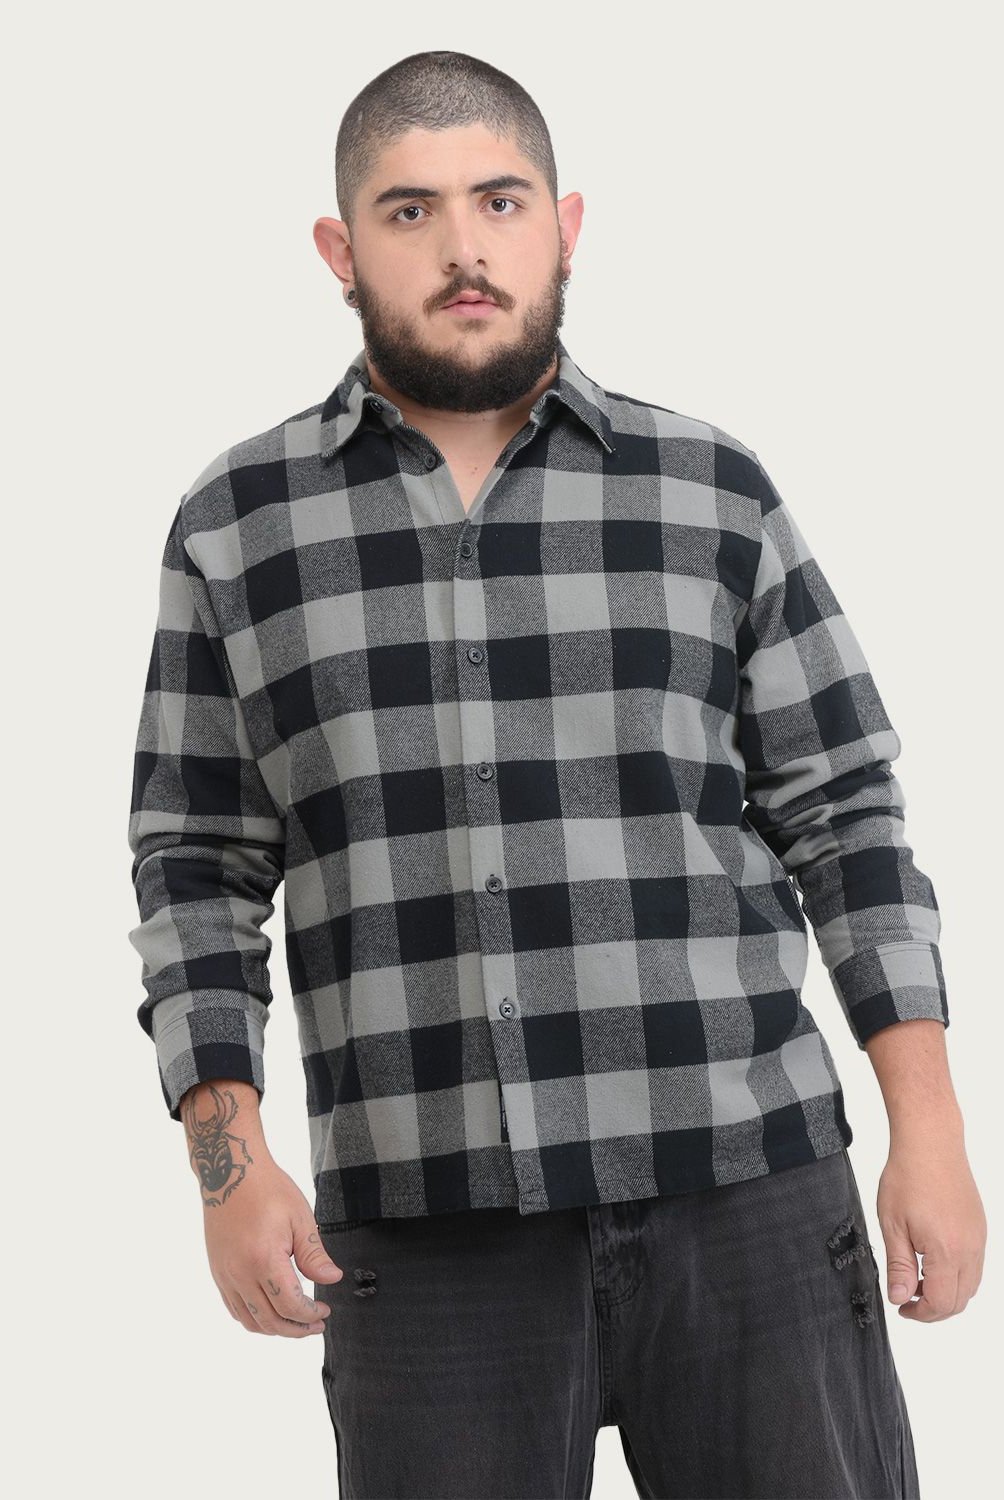 BEARCLIFF - Camisa casual para Hombre Regular Bearcliff